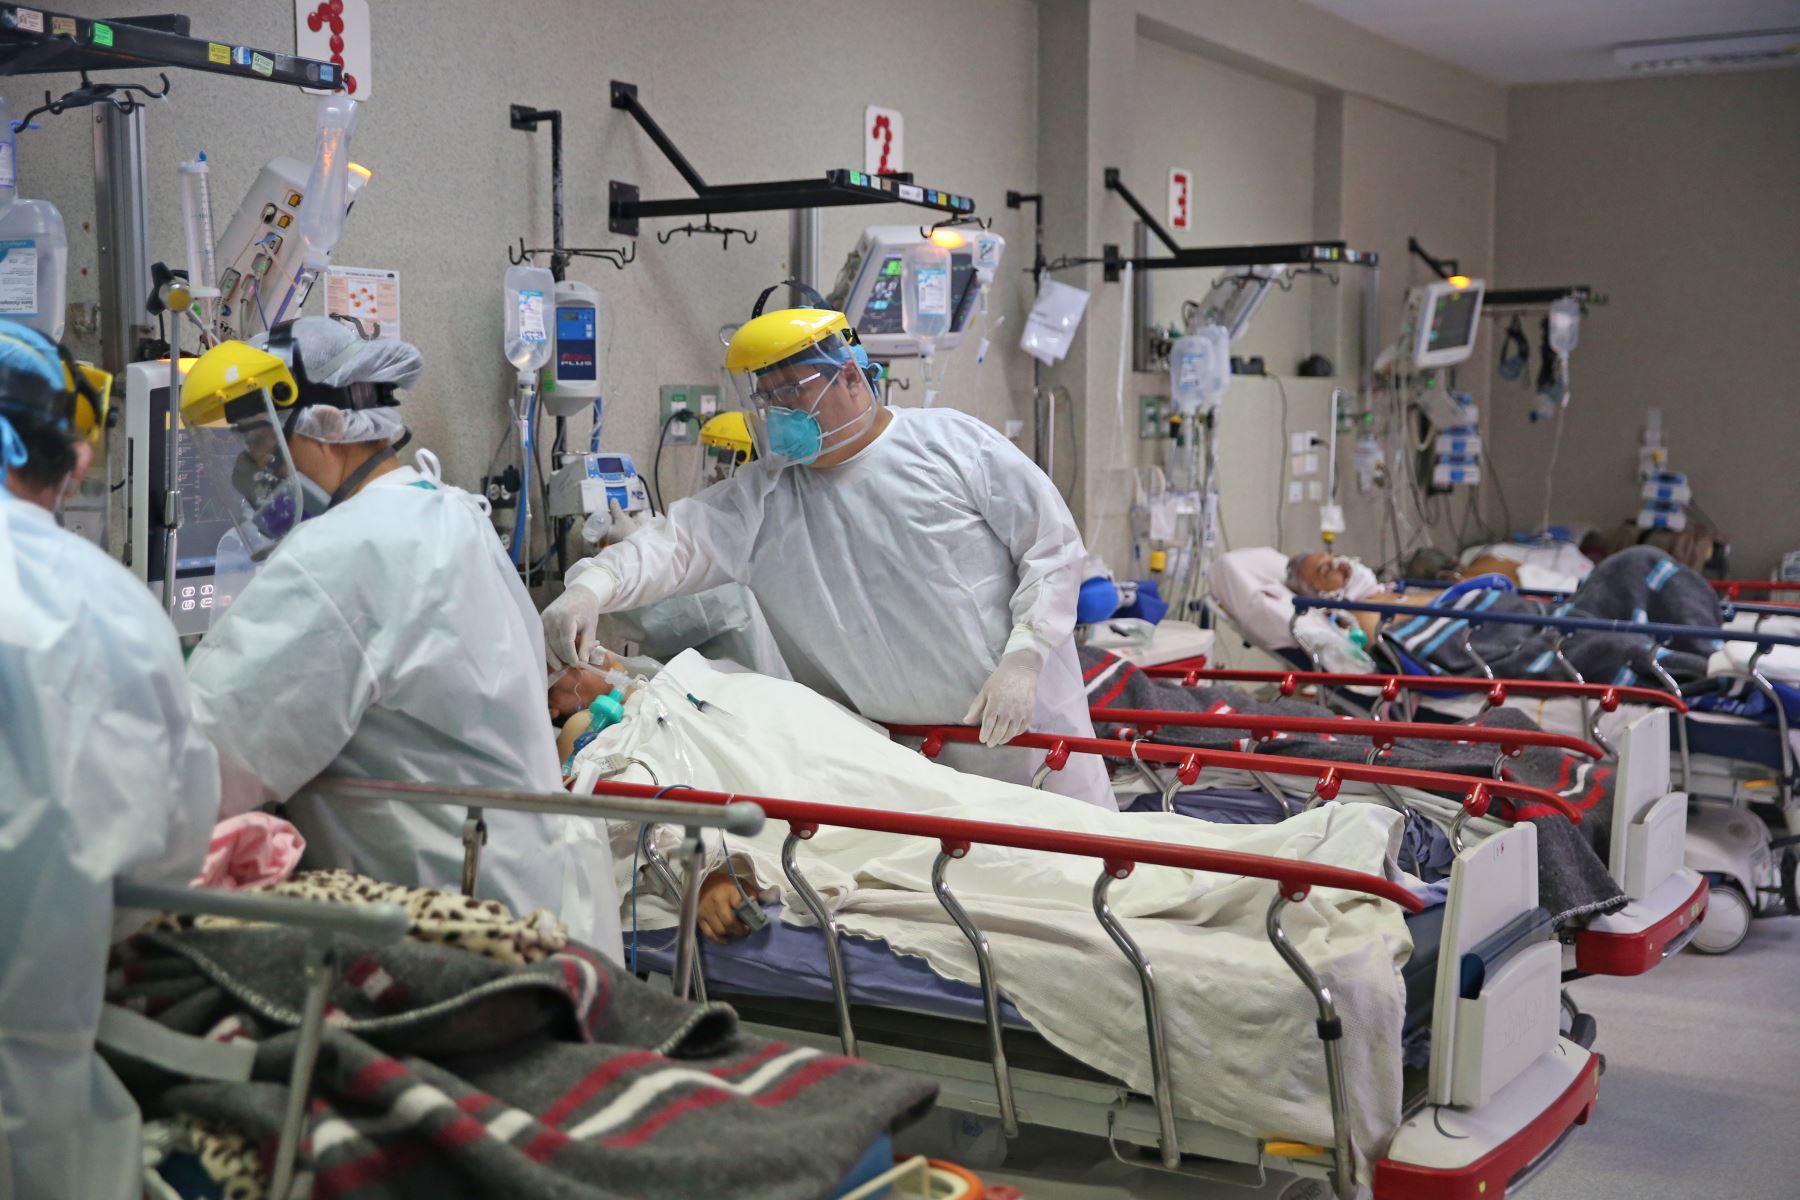 El Minsa informó que a la fecha hay 3,217 pacientes hospitalizados por covid-19, de los cuales 899 se encuentran en unidades de cuidados intensivos (UCI) con ventilación mecánica. ANDINA/Jhonel Rodríguez Robles